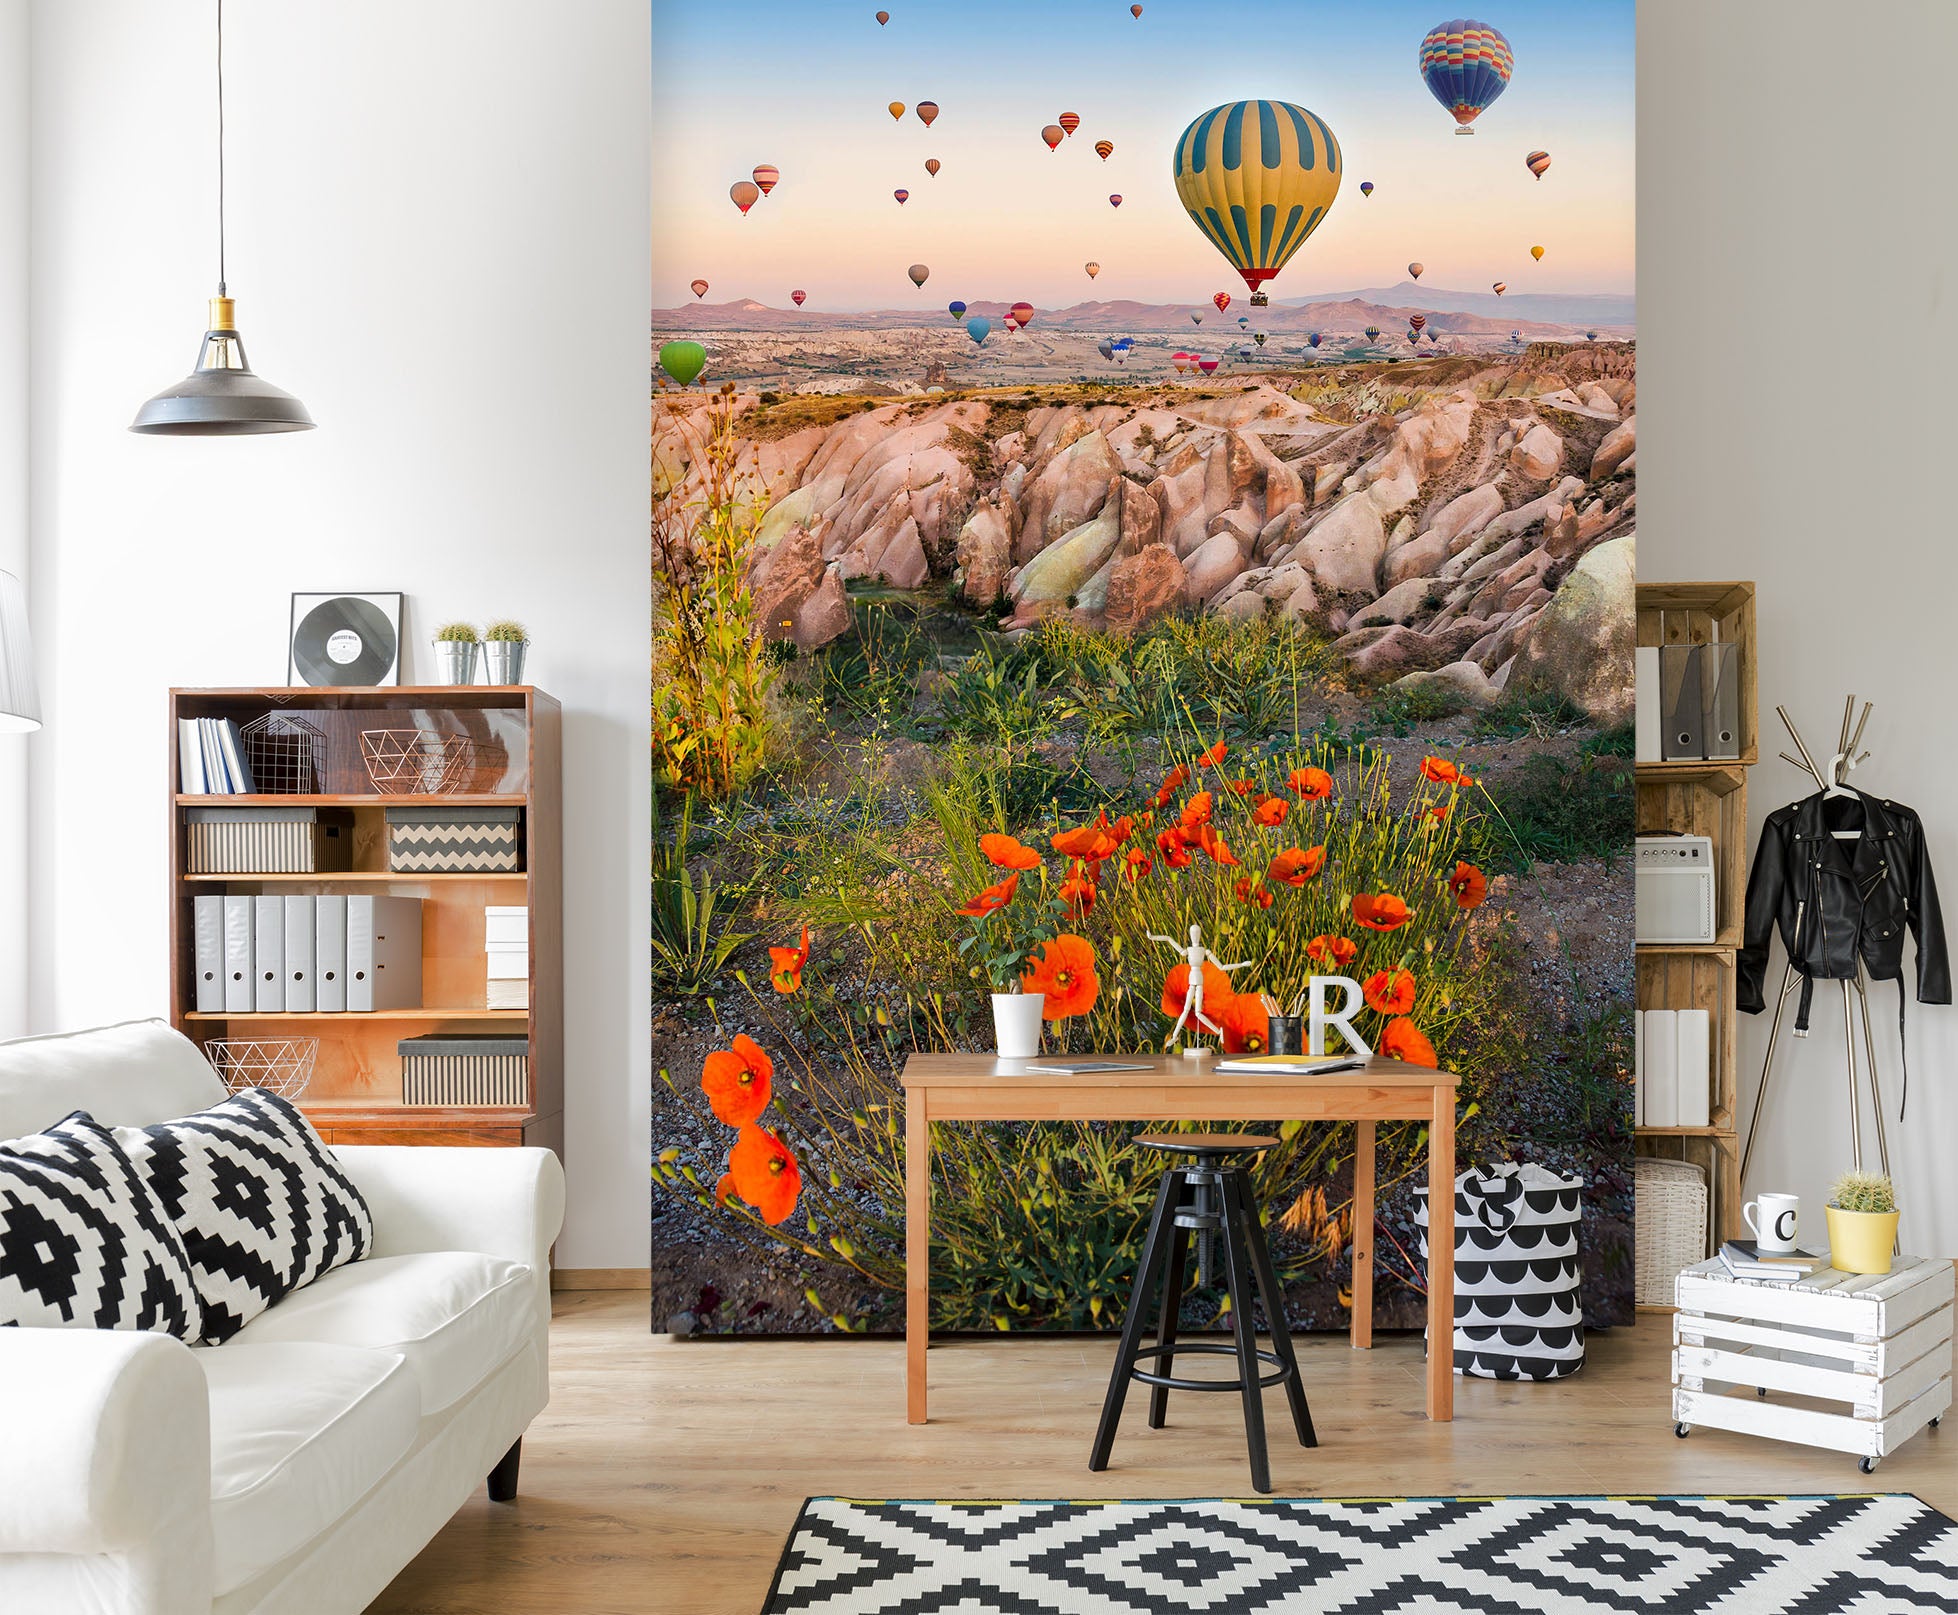 3D Hot Air Balloon 57144 Wall Murals